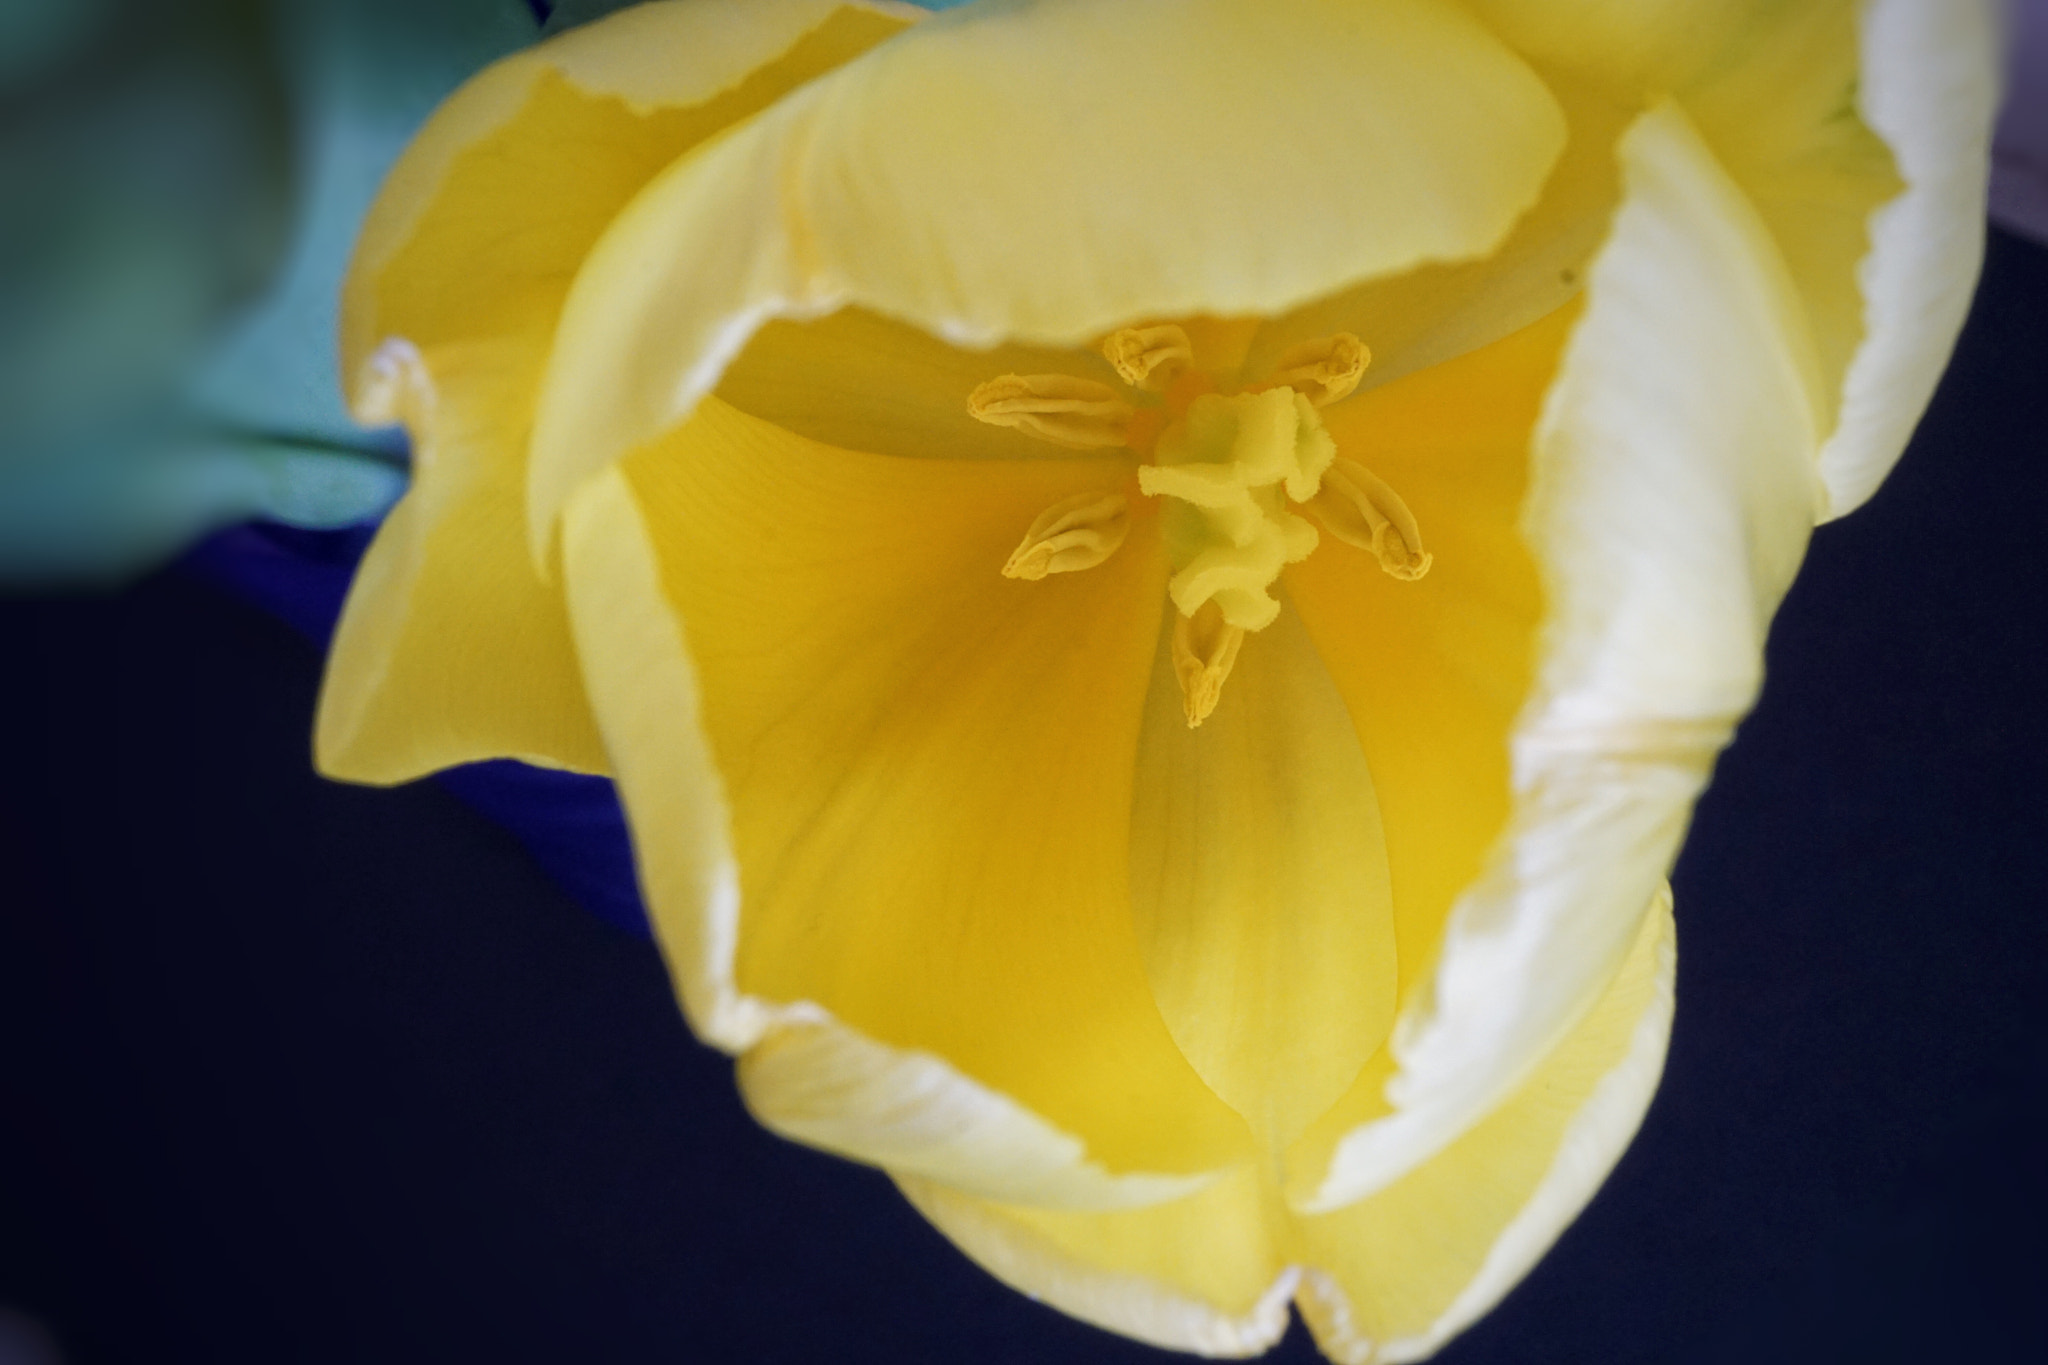 Sony E 30mm F3.5 sample photo. Tulip macro photography